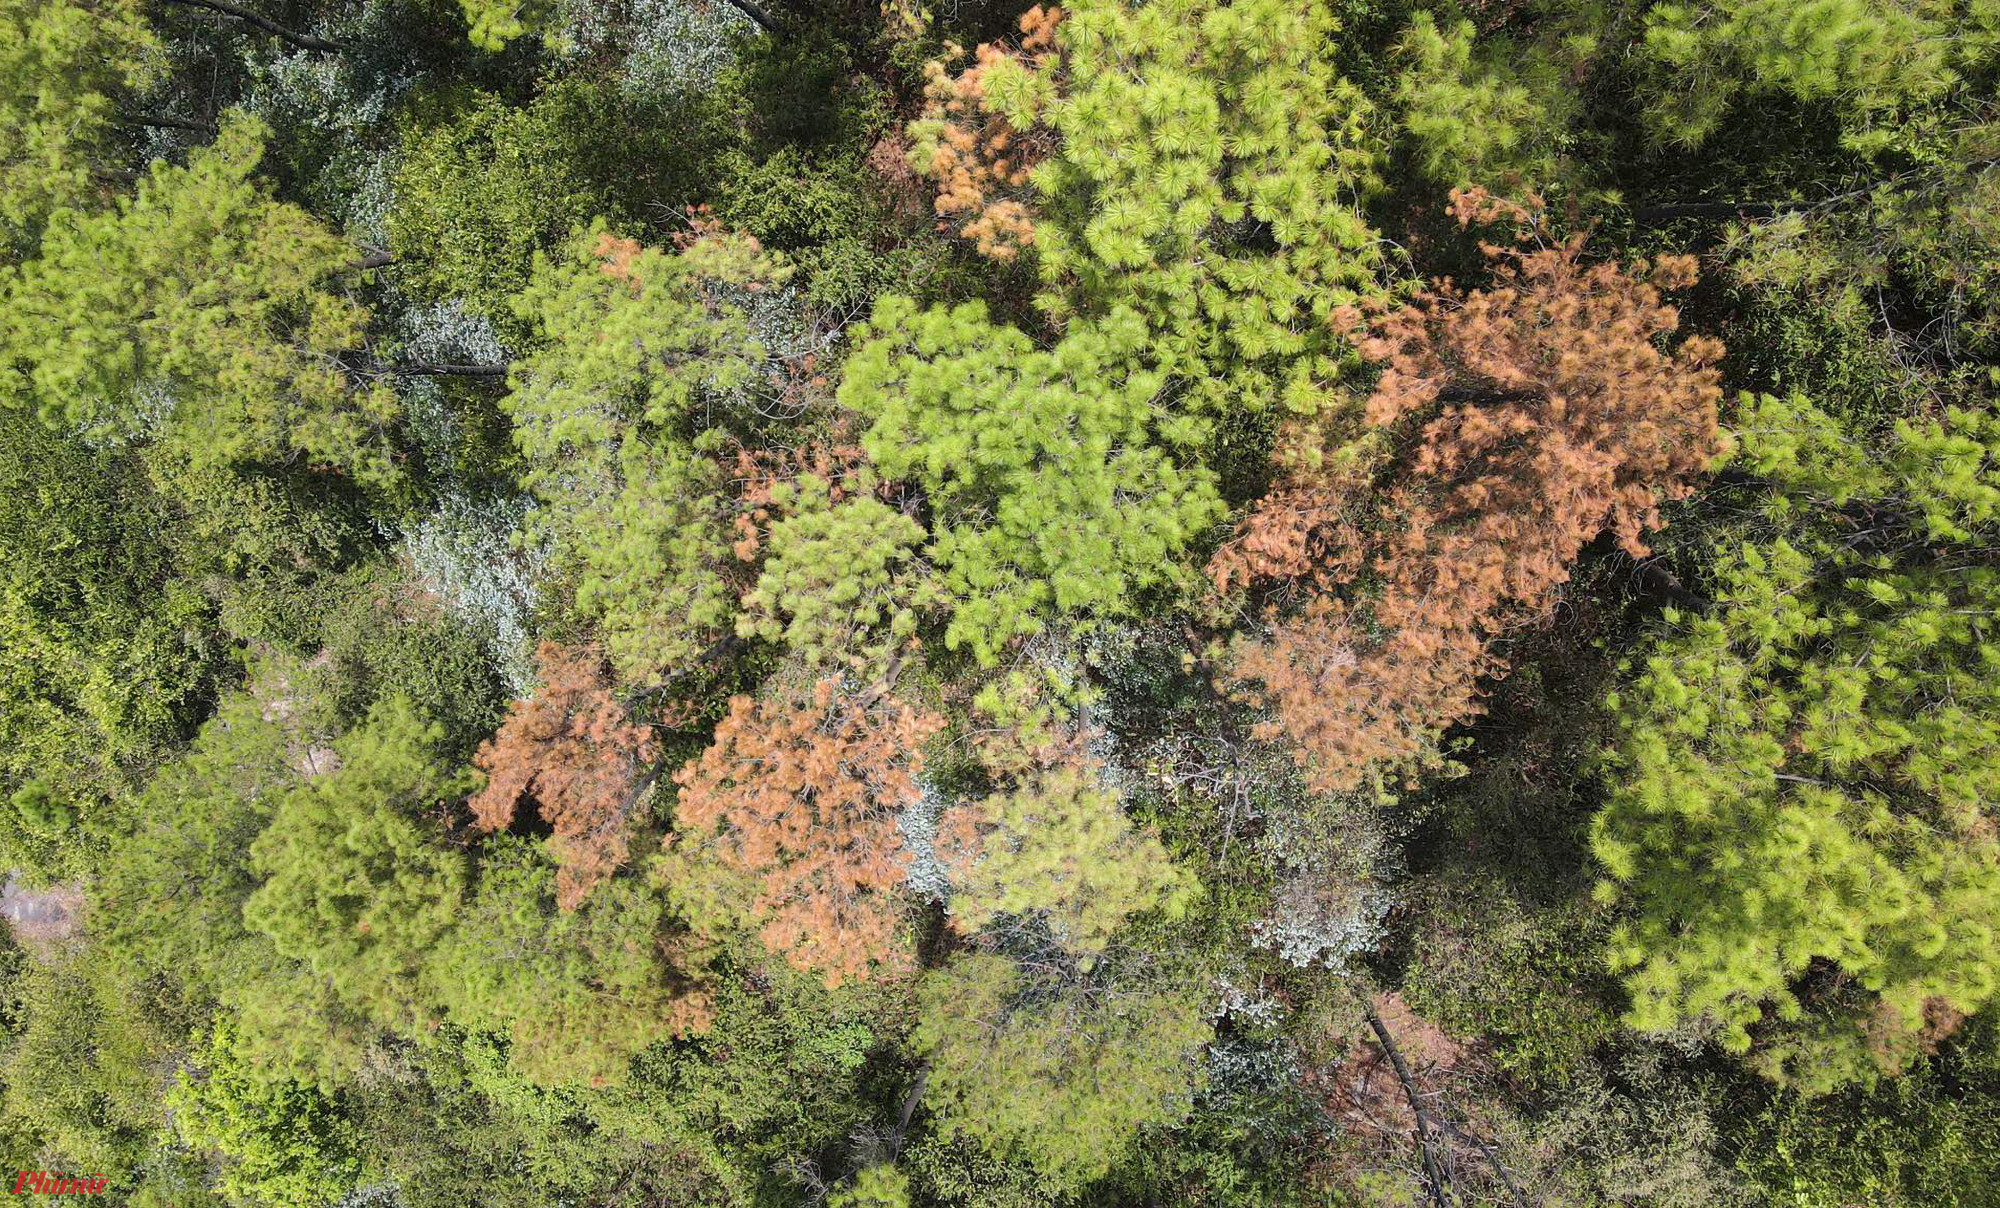 Sâu róm bắt đầu xuất hiện nhiều ở khu vực rừng phòng hộ Hồng Lĩnh từ hơn 1 tháng trước. Đơn vị quản lý thống kê có khoảng 2.000 ha bị ảnh hưởng do sâu bệnh, trong đó nhiều phần diện tích cây thông đang cho khai thác nhựa.